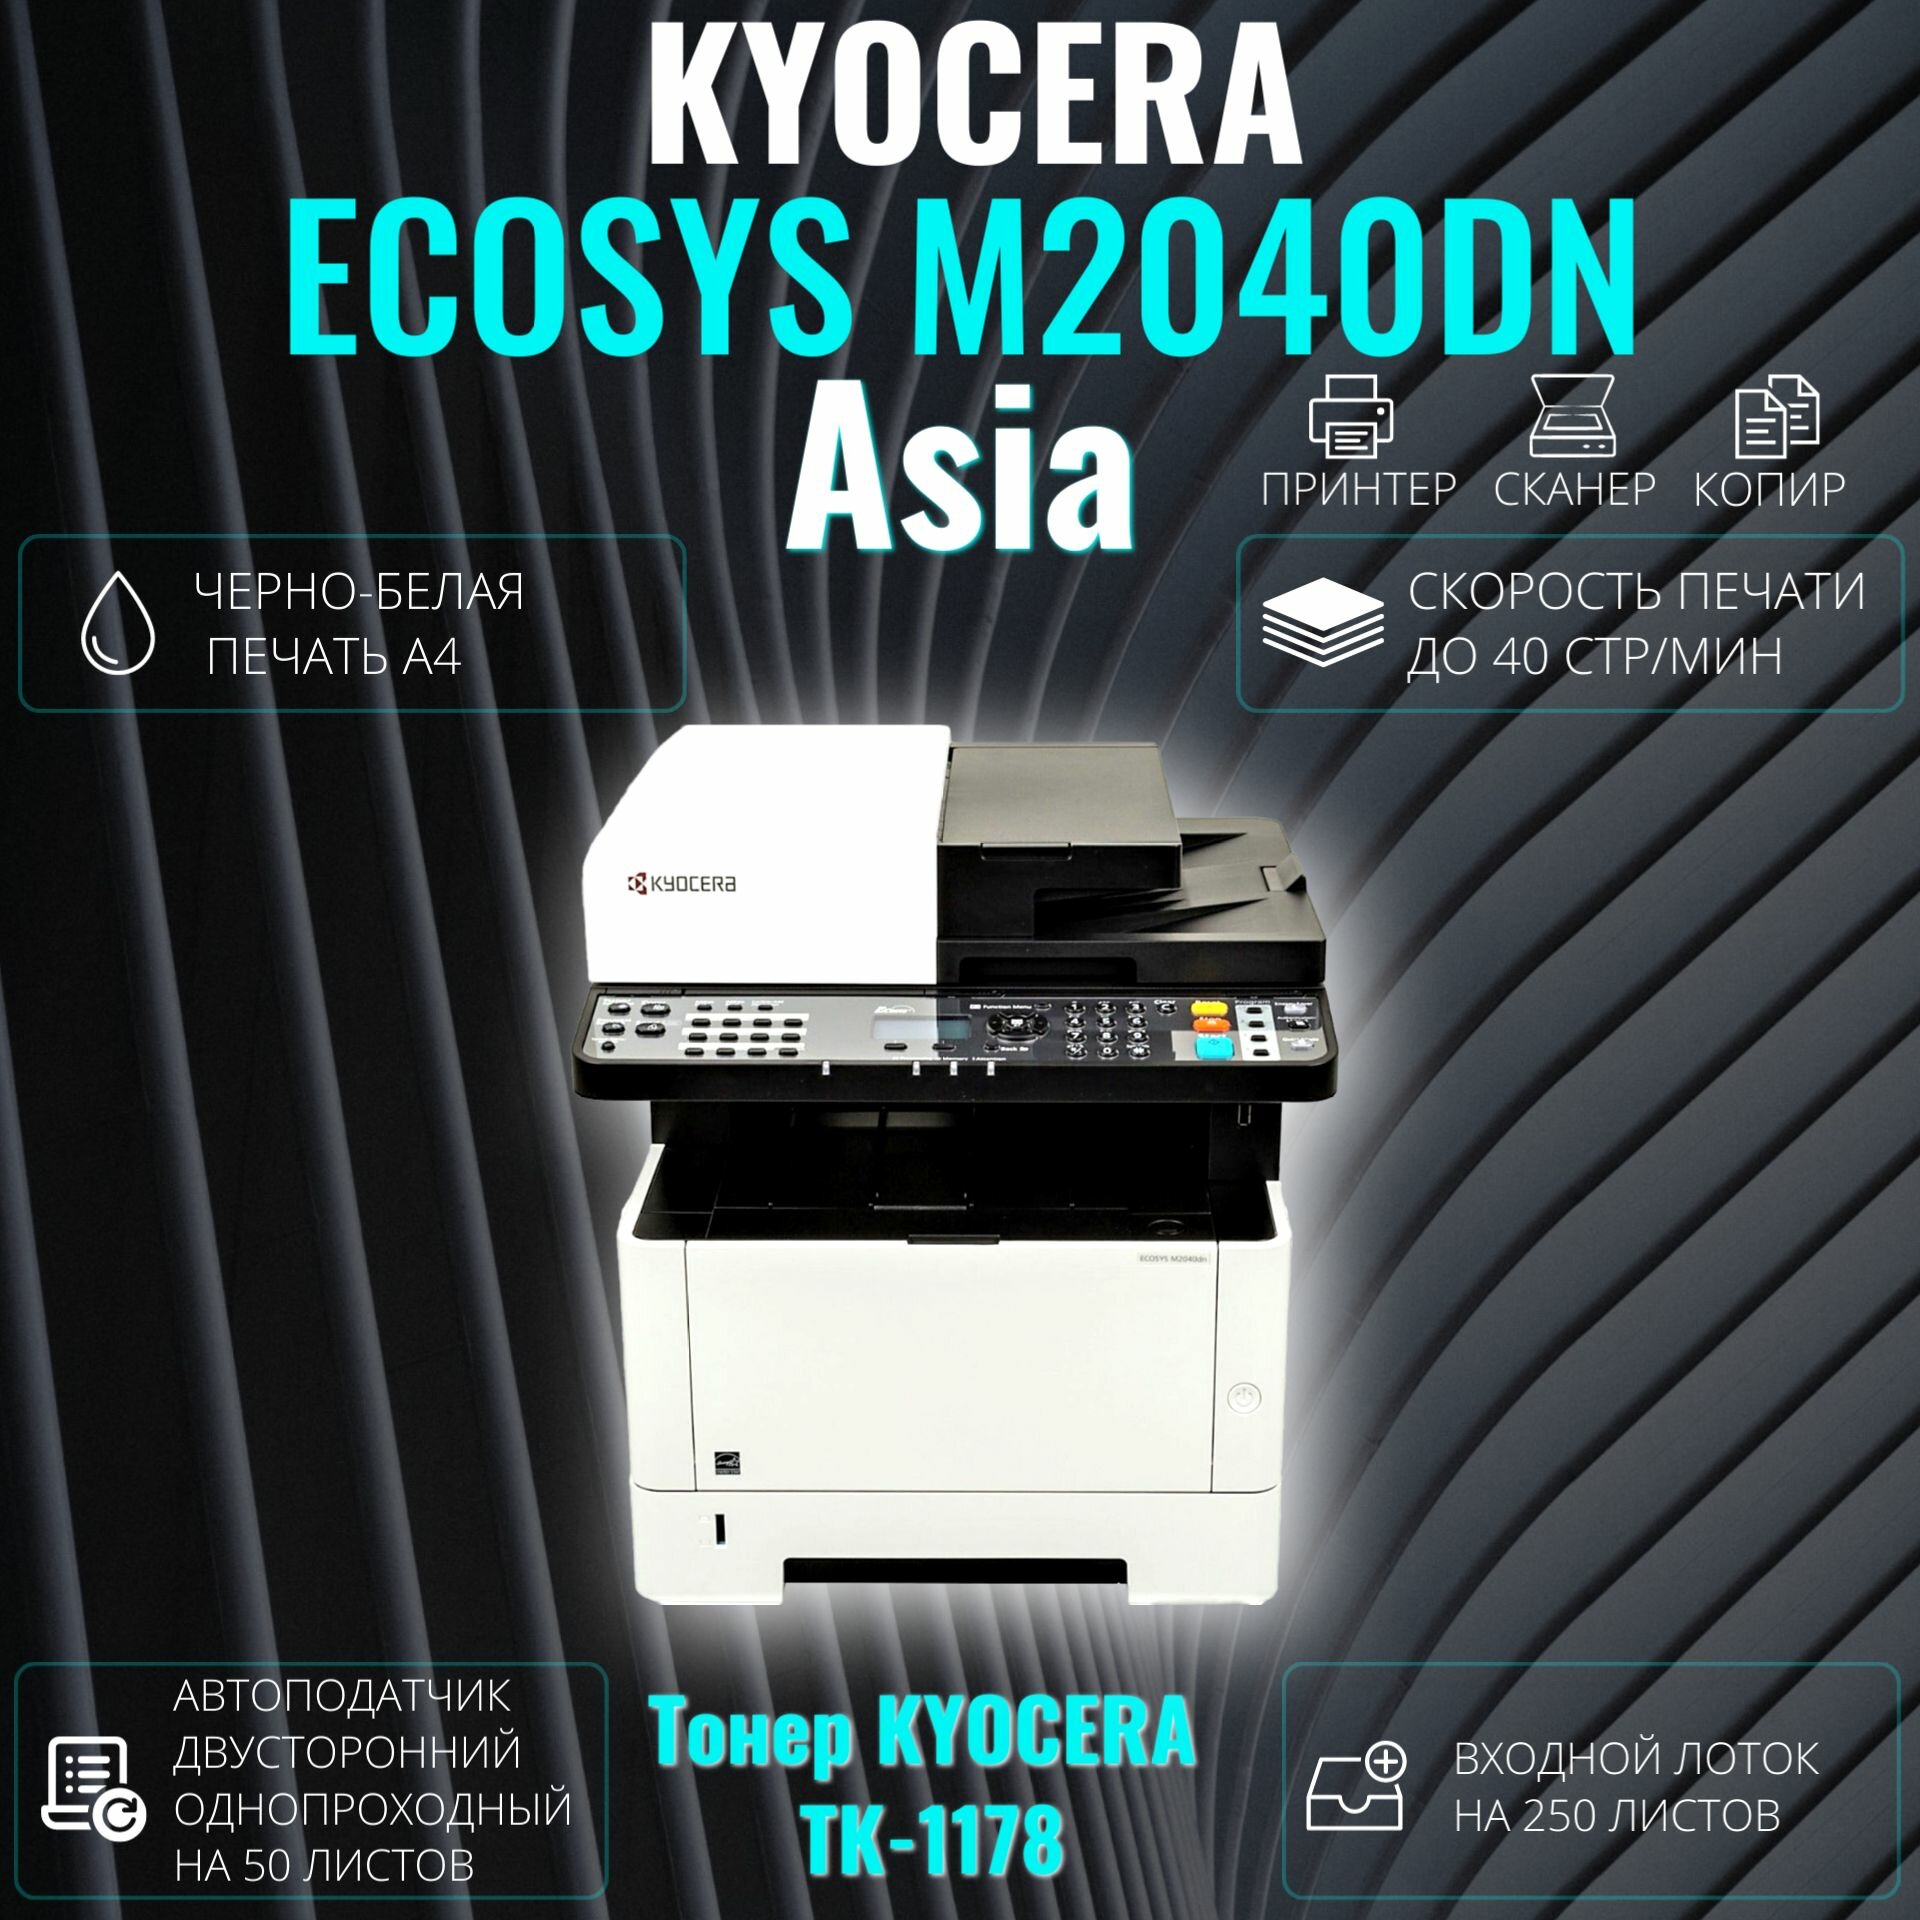 МФУ лазерное Kyocera ECOSYS M2040DN черно-белая печать А4. Азиатская версия (1102S33AX0), тонер TK-1178